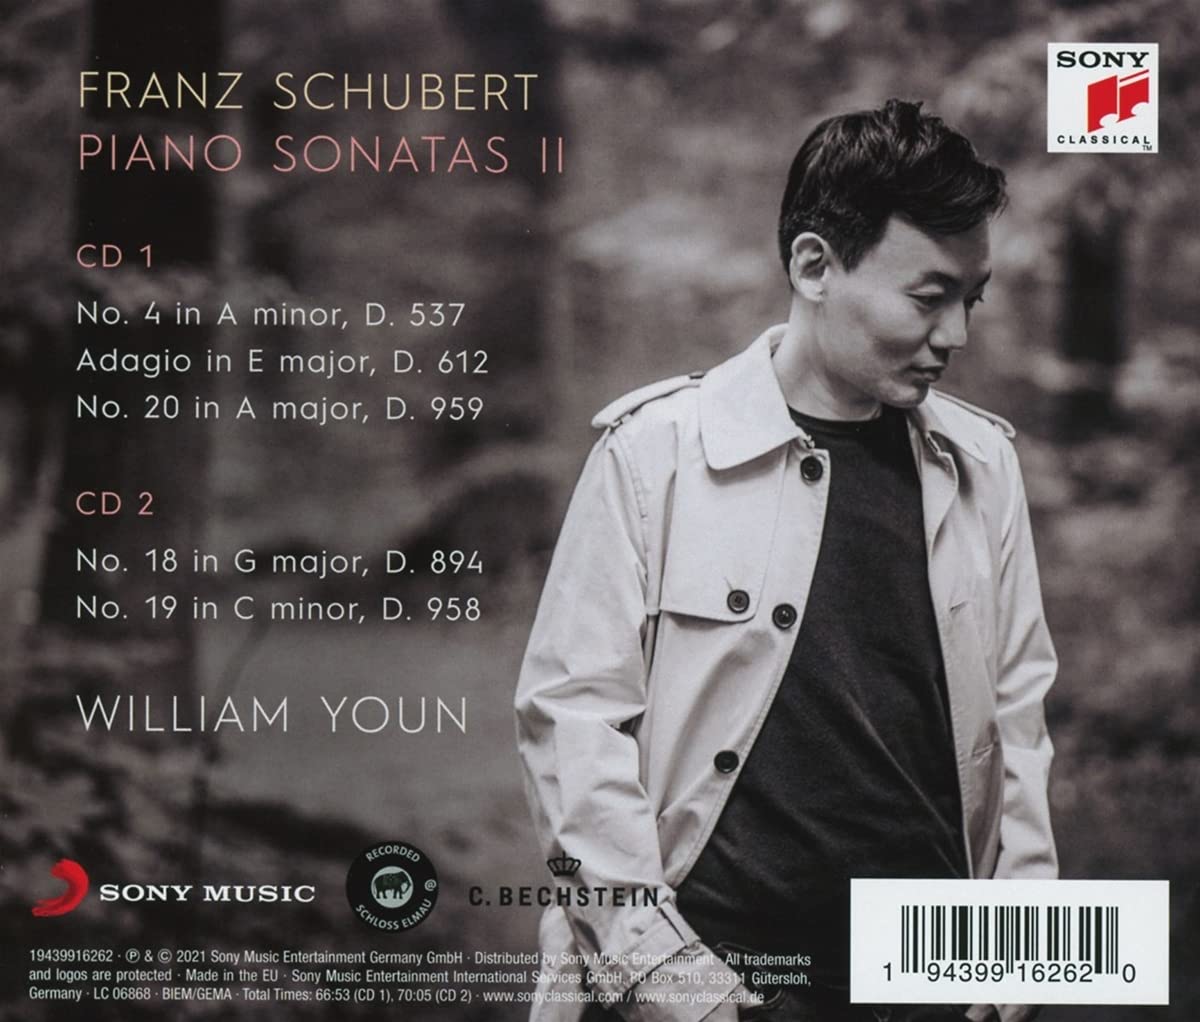 윤홍천 (William Youn) - 슈베르트: 피아노 소나타 2집 (Schubert: Piano Sonatas II) 